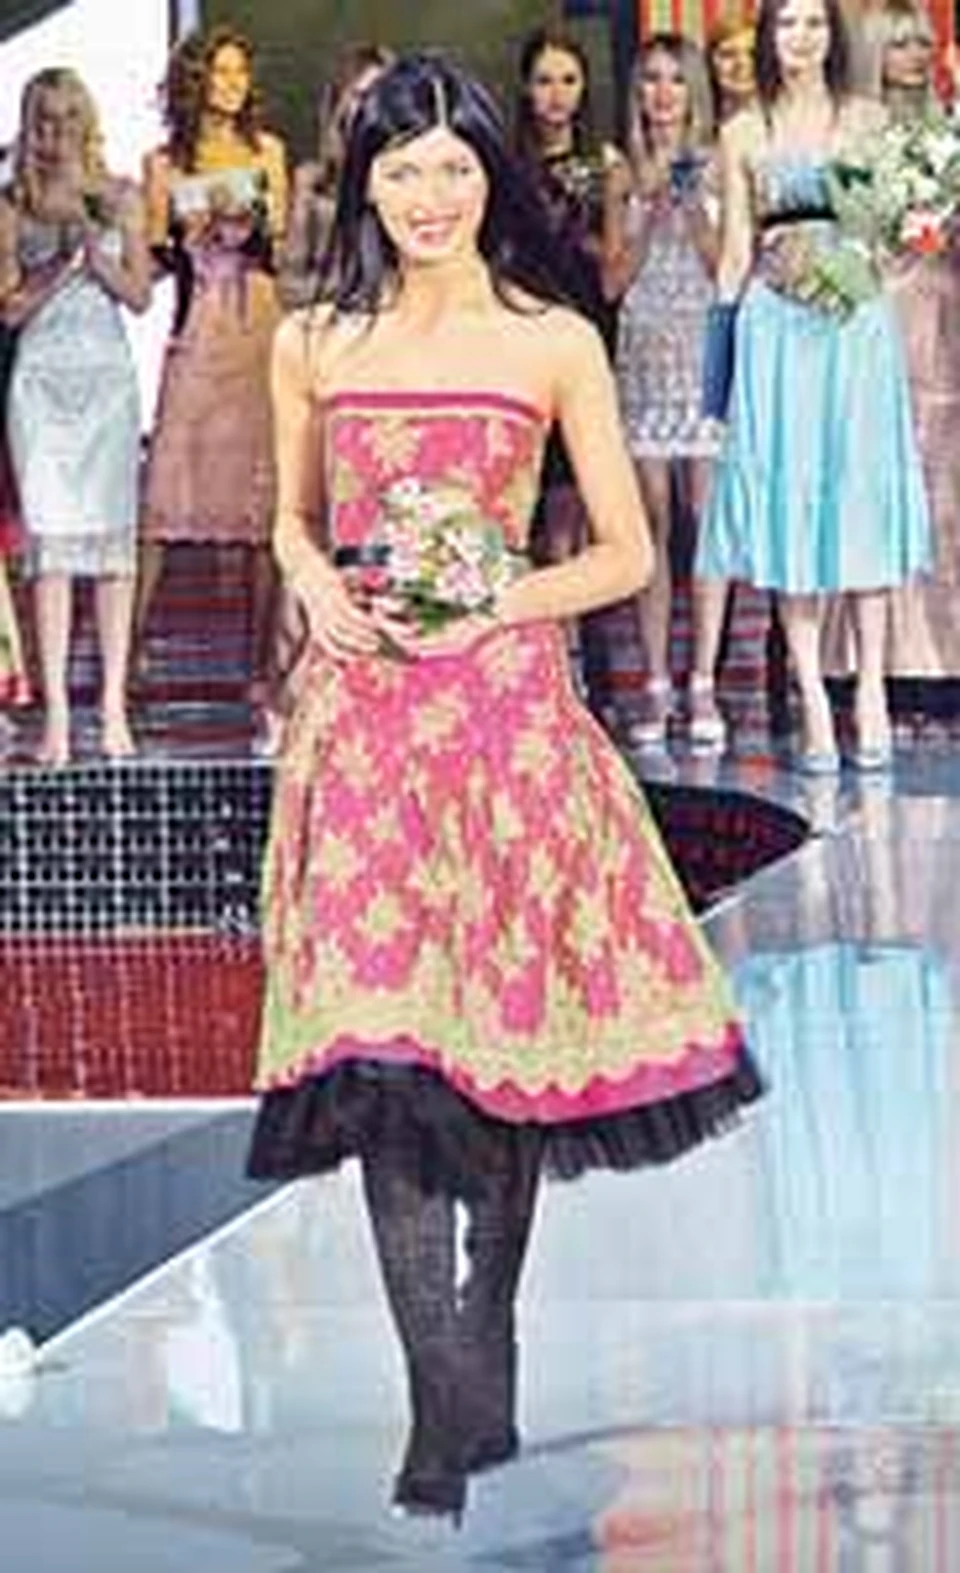 Лучшая из лучших моделей  -  16-летняя Яна Антонюк.  Ее триумфальное дефиле.